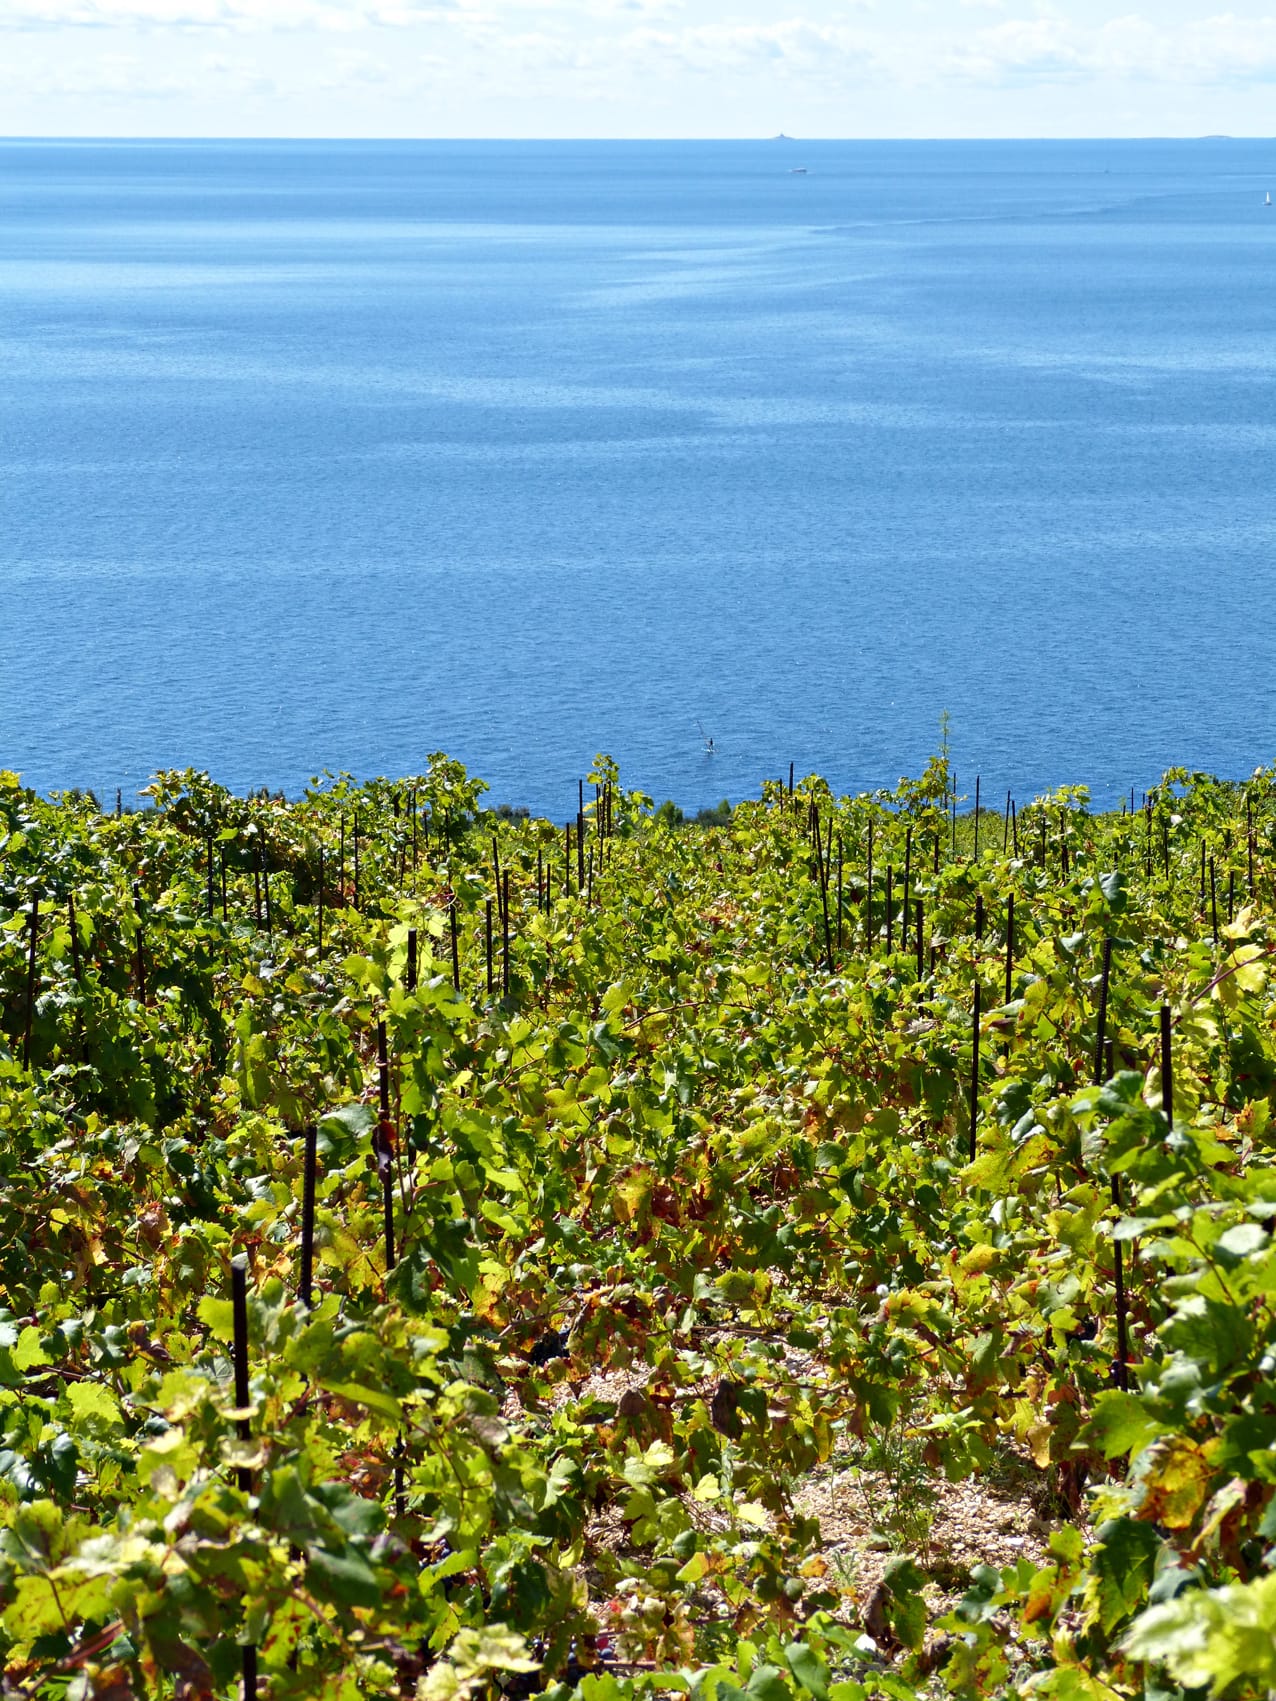 Die sonnige Hanglage direkt am Meer gibt dem Pelješac-Wein seine einzigartige Harmonie von Farbe, Aroma und Geschmack.